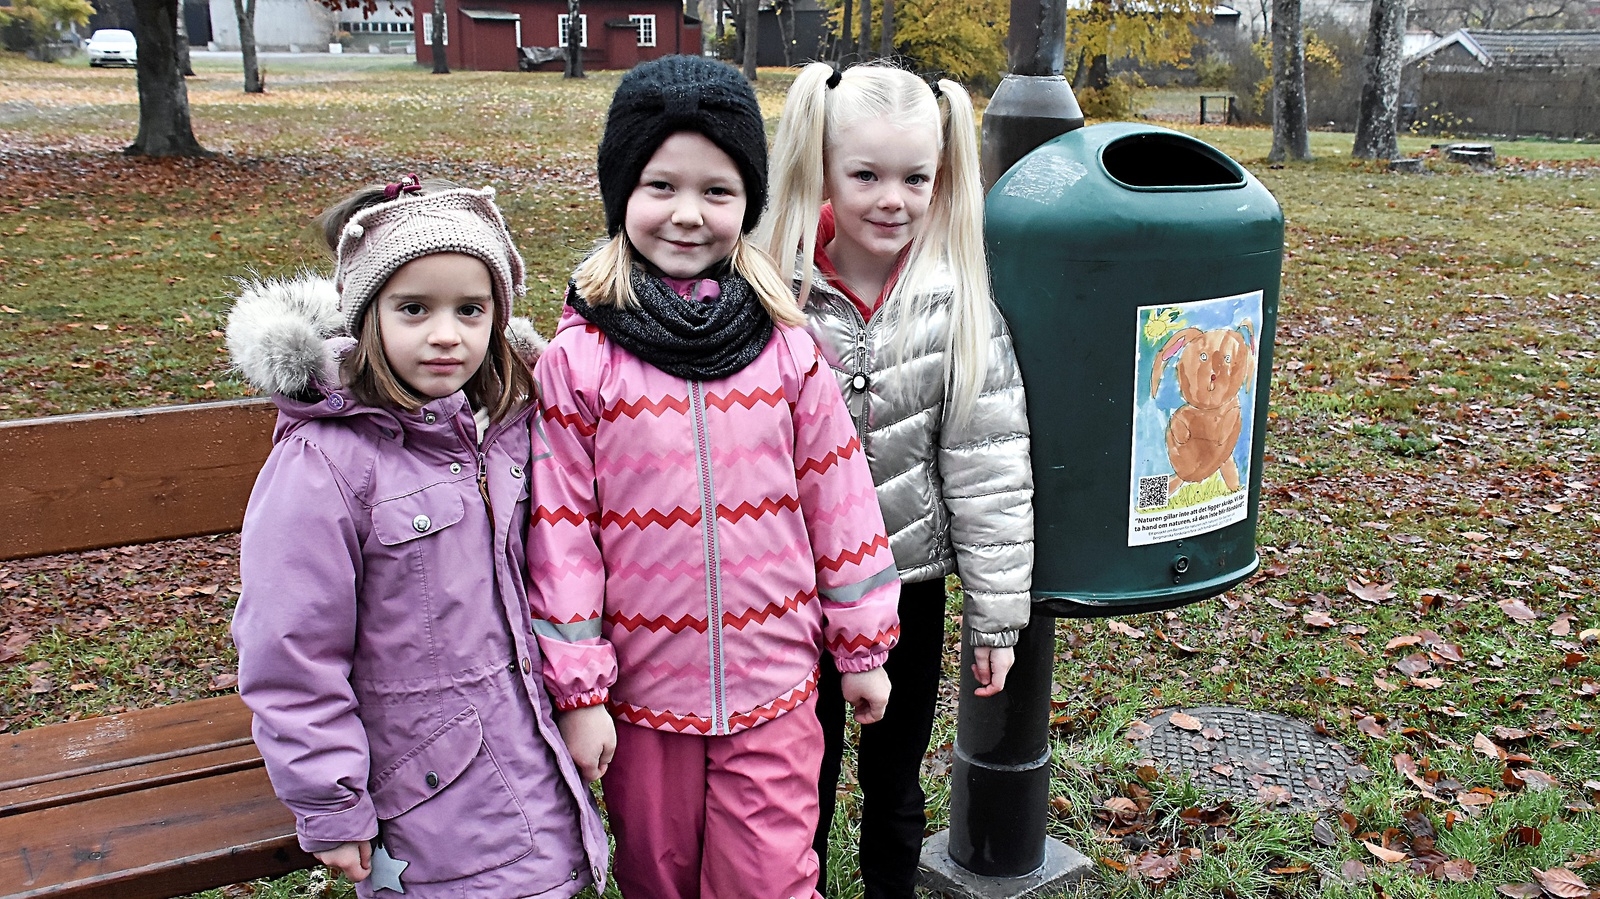 Bianca, Elise och Lia var några av de barn som gjorde en insats för miljön på lördagen. Foto: Helén Fingalsson